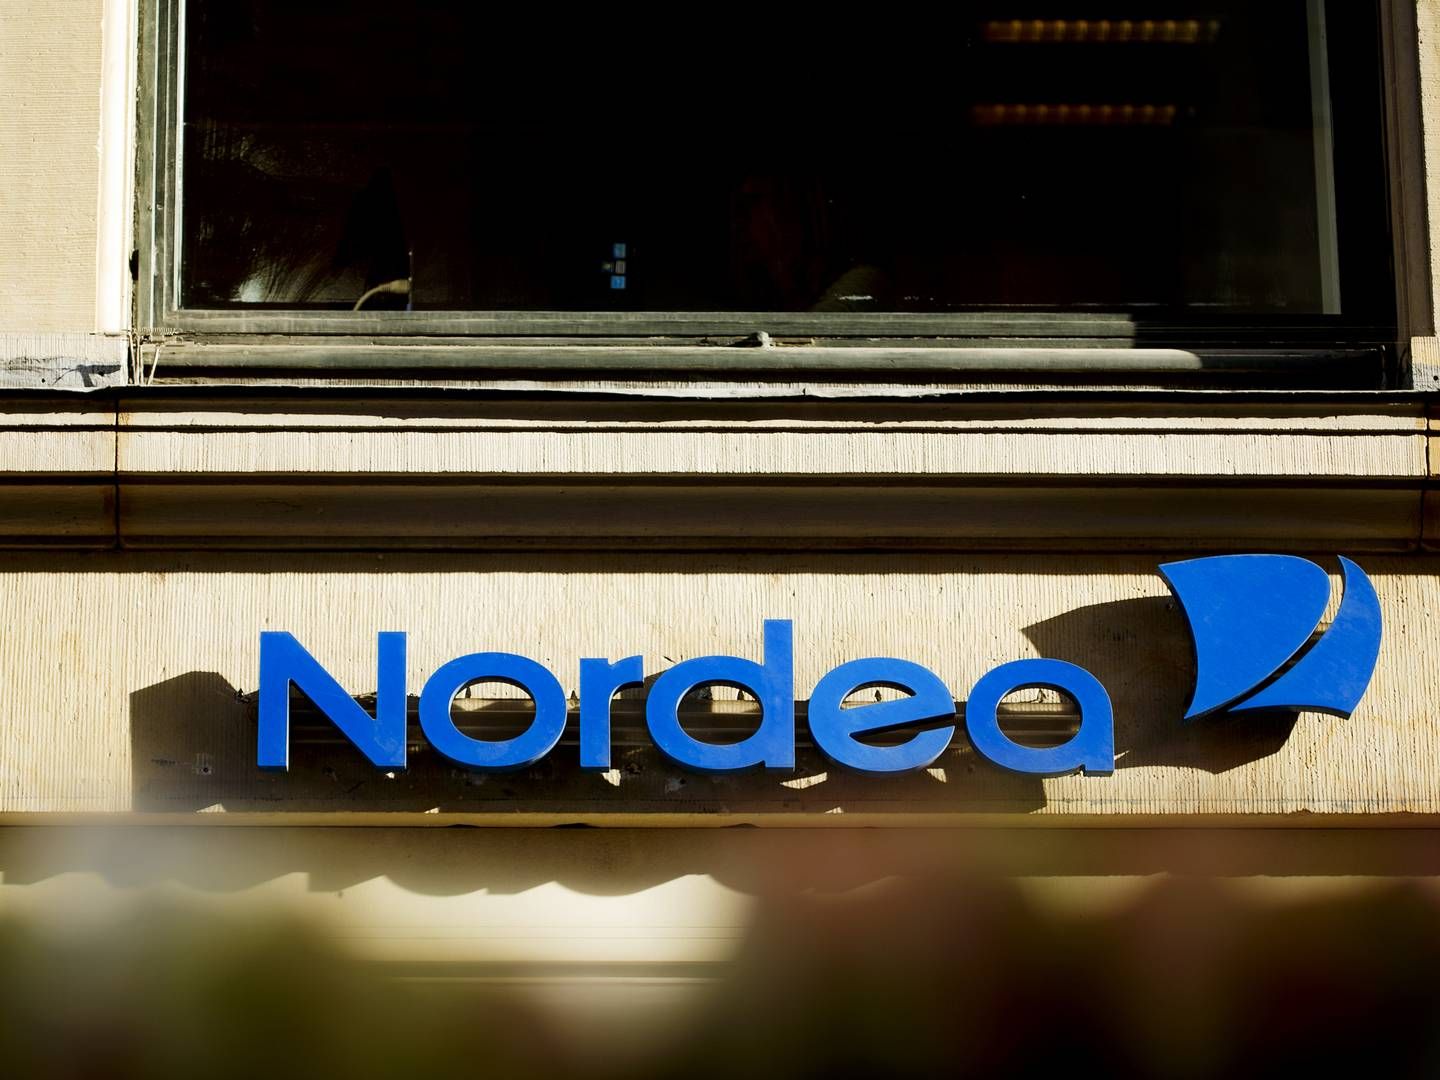 36-årige Morten Hjorth Hansen bliver ny filialdirektør for Nordea på Bornholm. Han kommer fra en stilling som filialdirektør i Nordea i Søborg. | Foto: Miriam Dalsgaard